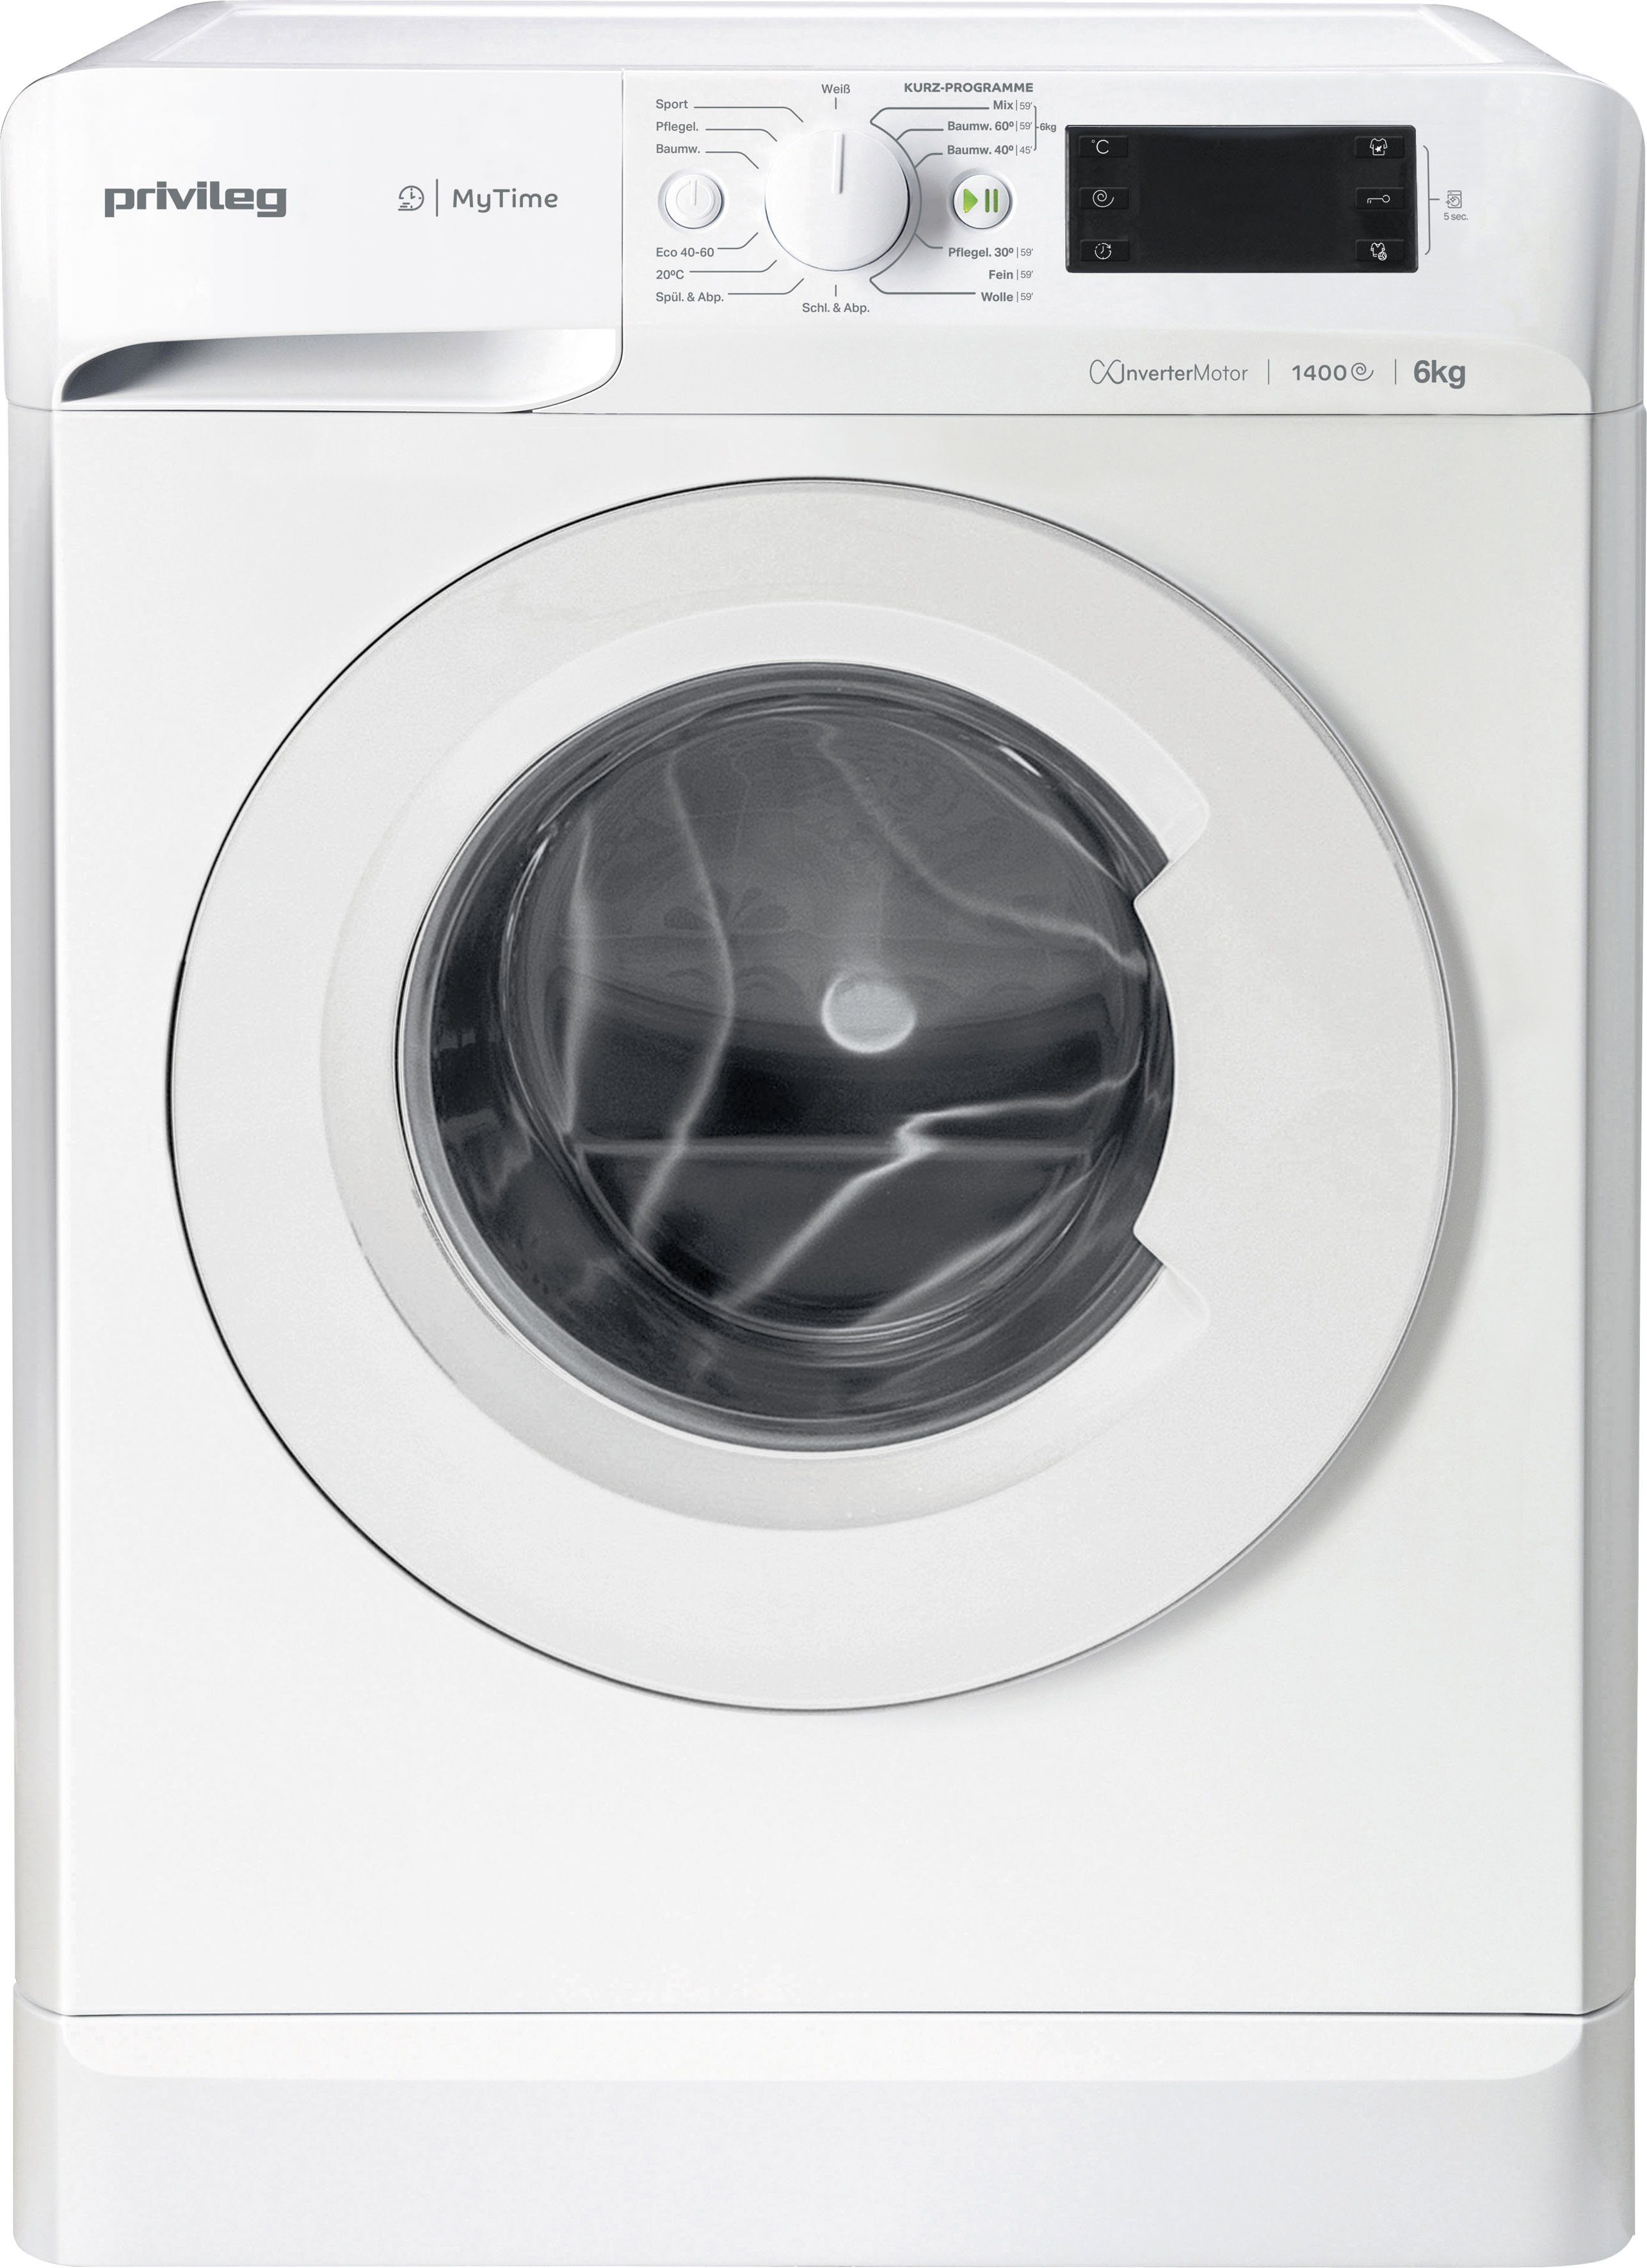 Privileg Waschmaschine OPWF MT 61483, 6 kg, 1400 U/min online kaufen | OTTO